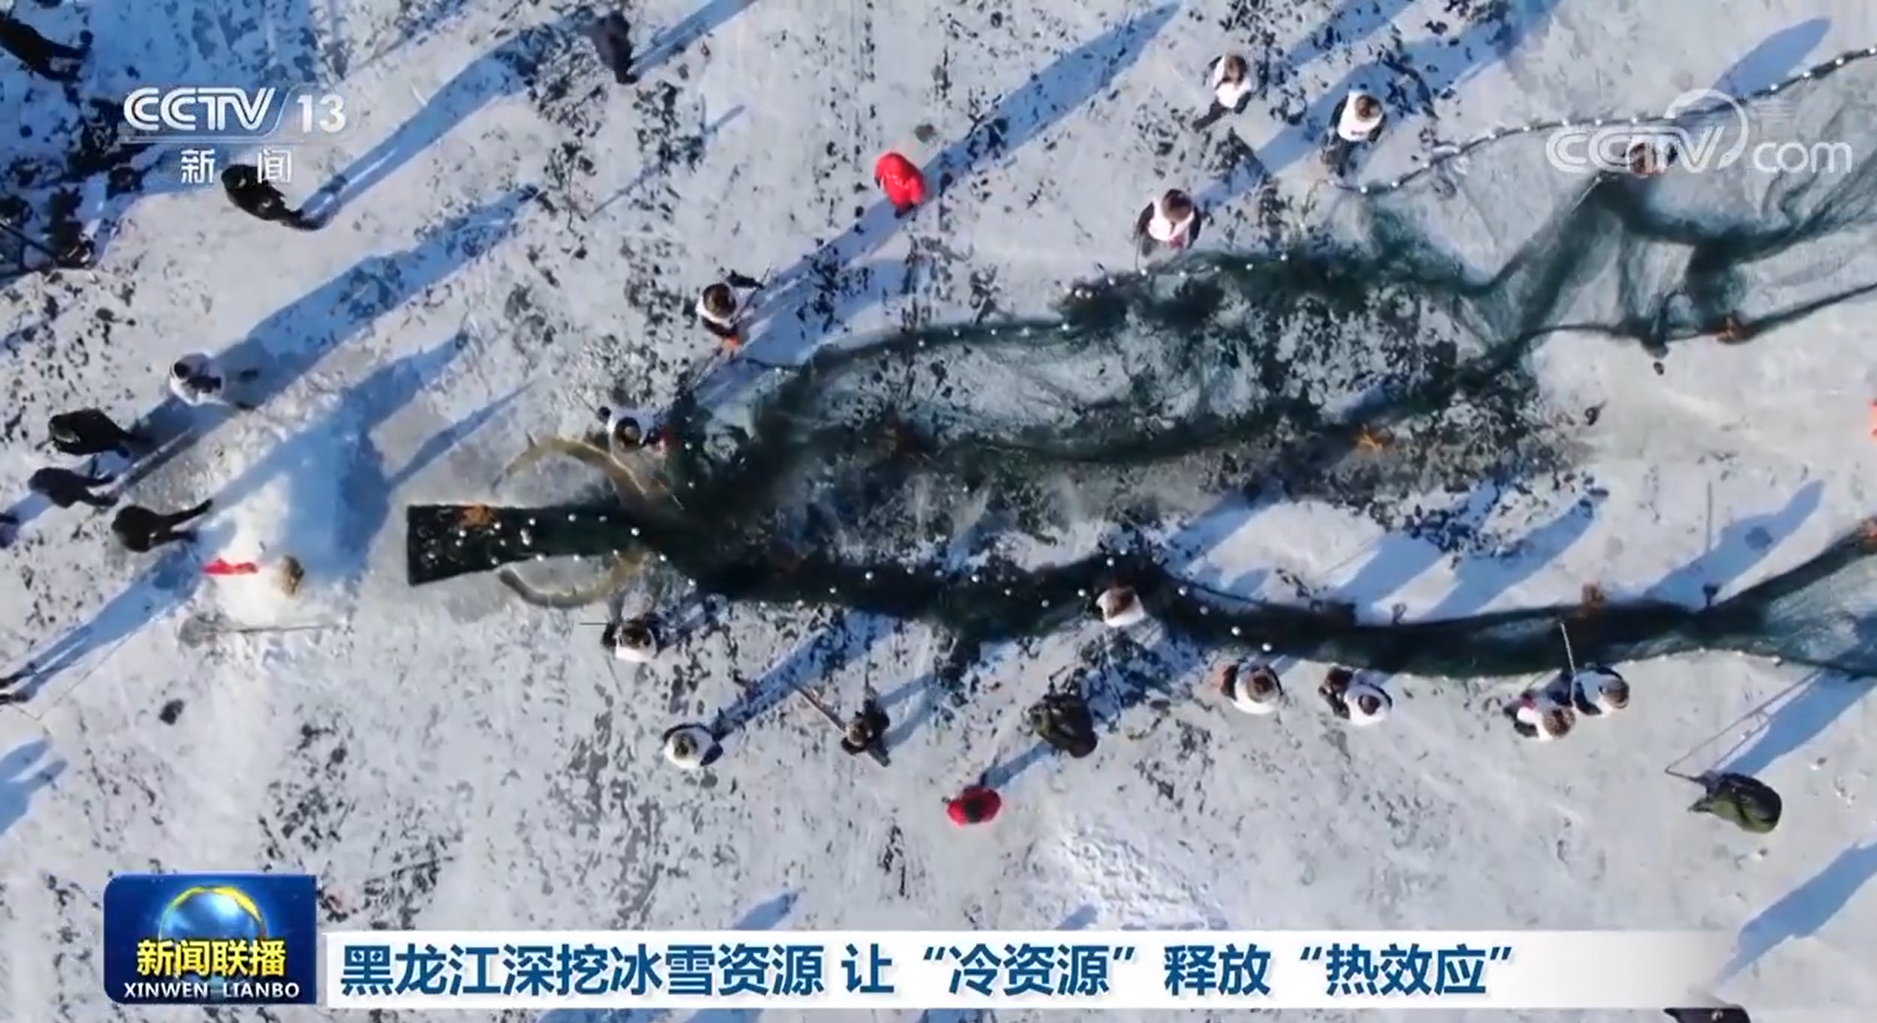 黑龙江深挖冰雪资源 让“冷资源”释放“热效应”